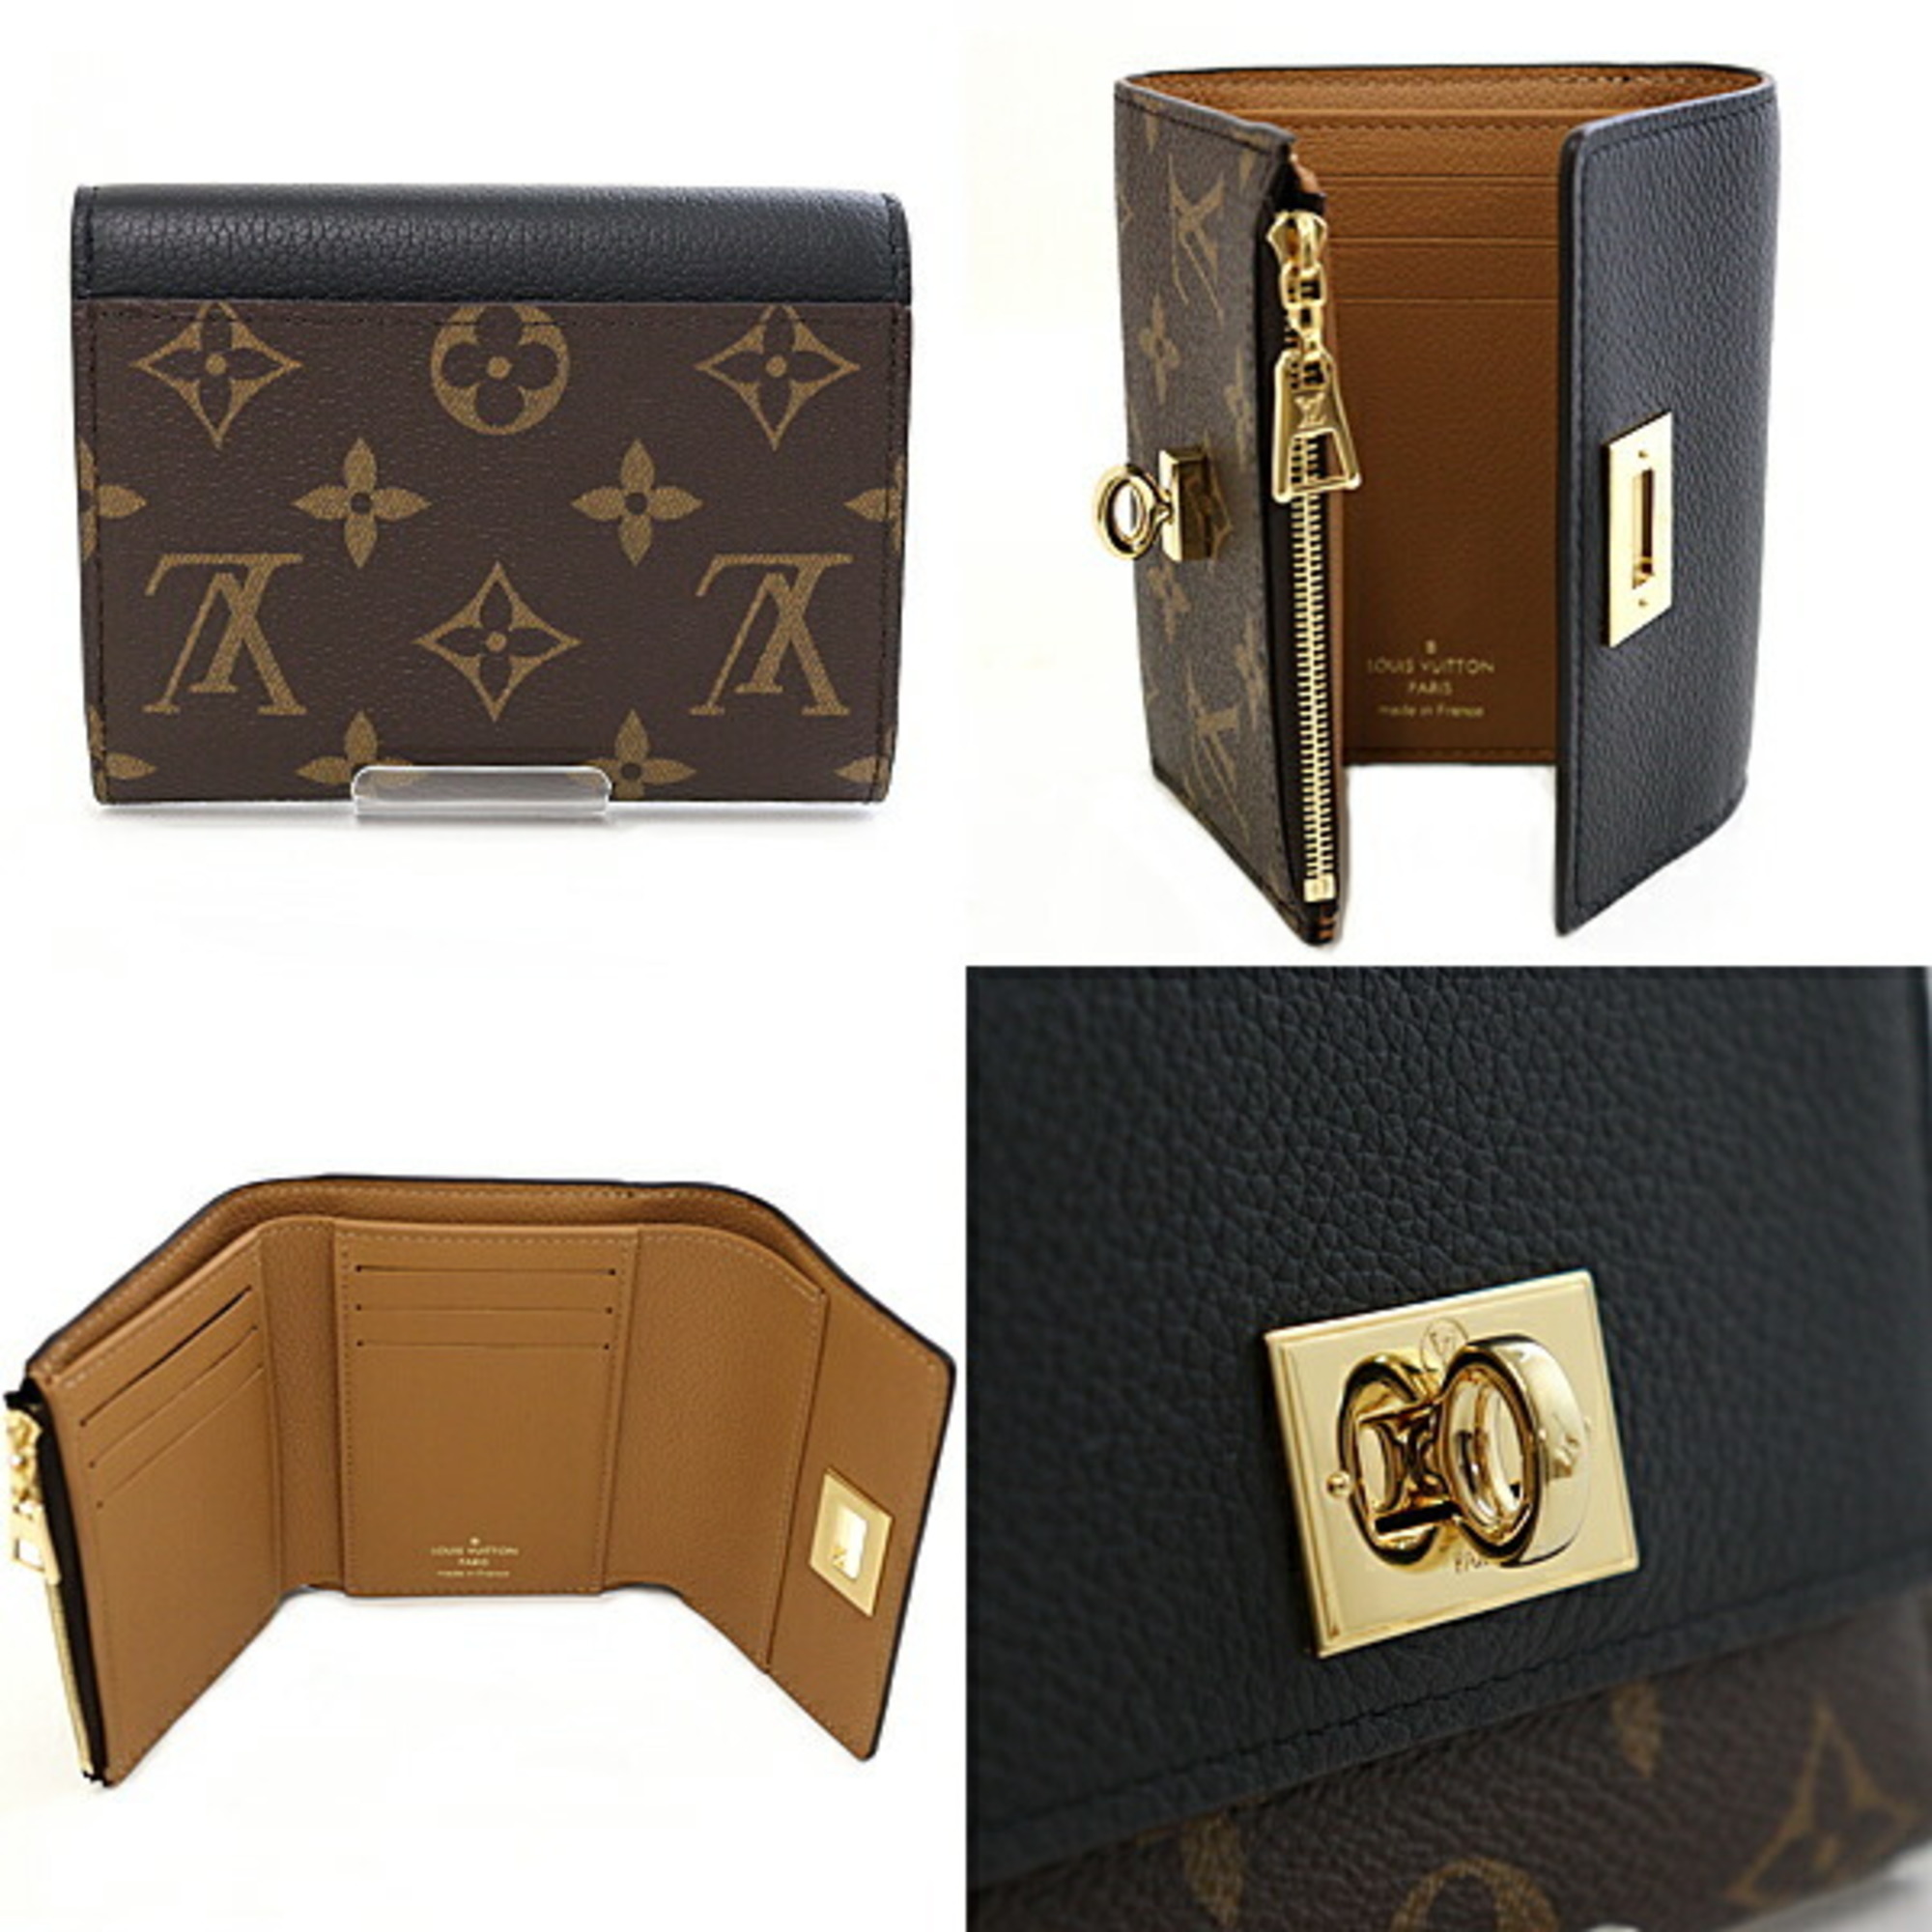 Louis Vuitton LOUIS VUITTON Portefeuille Victorine Tri-fold Wallet M82640 Brown Black